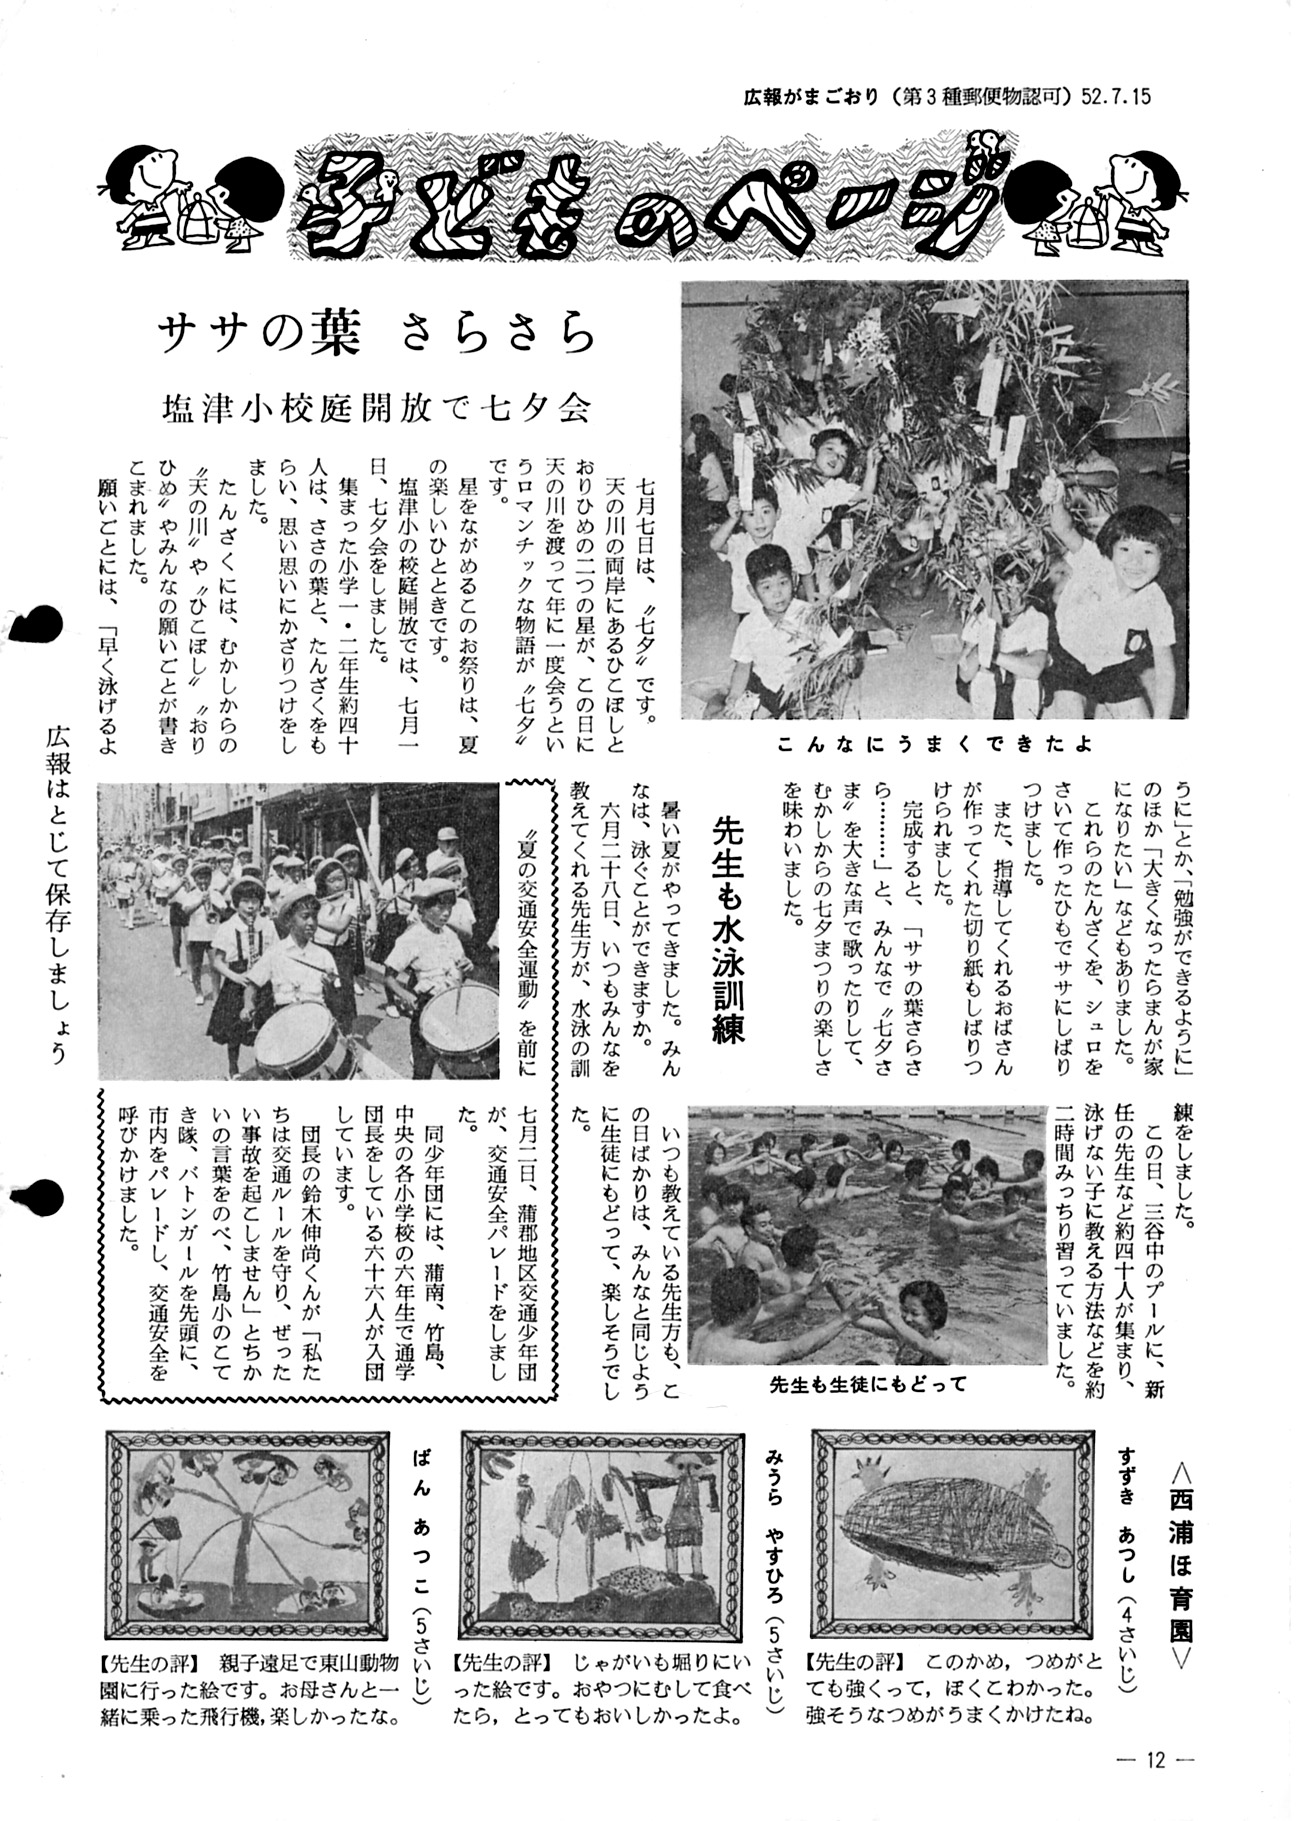 広報がまごおり 昭和52年7月 愛知県蒲郡市公式ホームページ